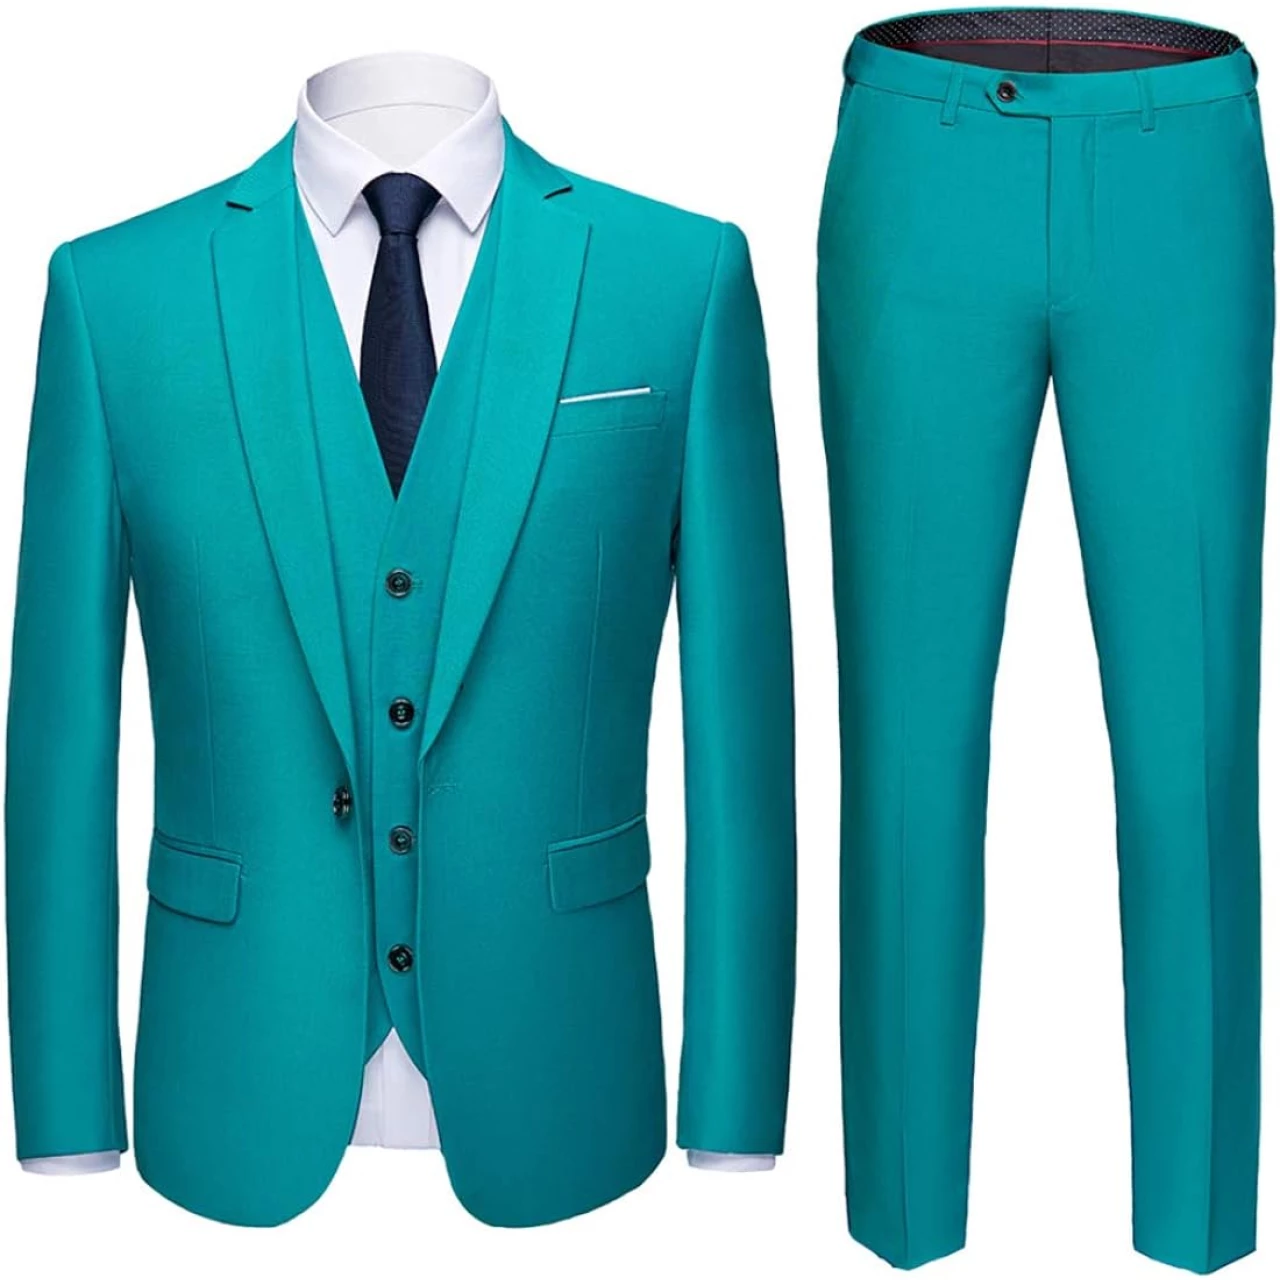 MY&rsquo;S Men&rsquo;s 3 Piece Slim Fit Suit, One Button Jacket Blazer Vest Pants Set and Tie